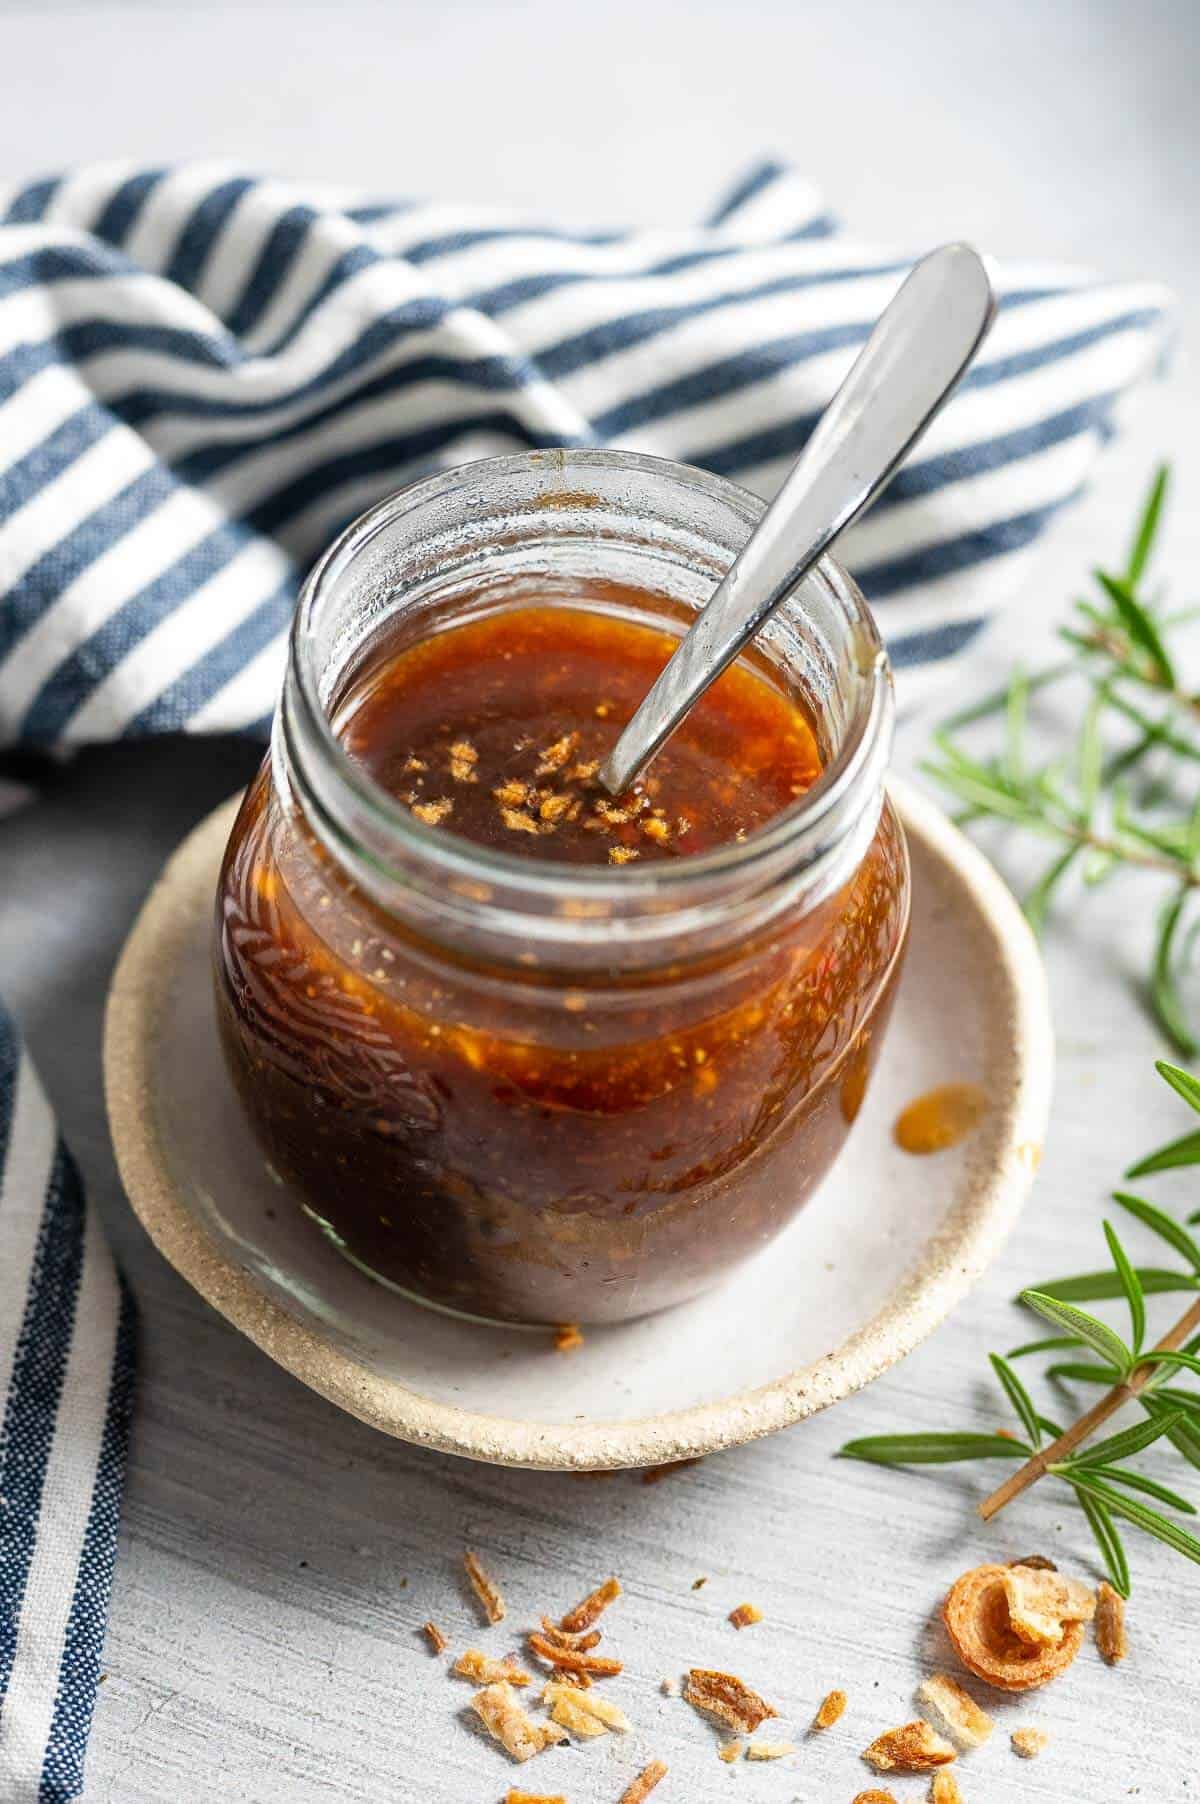 sugar free stir fry sauce in a glass jar